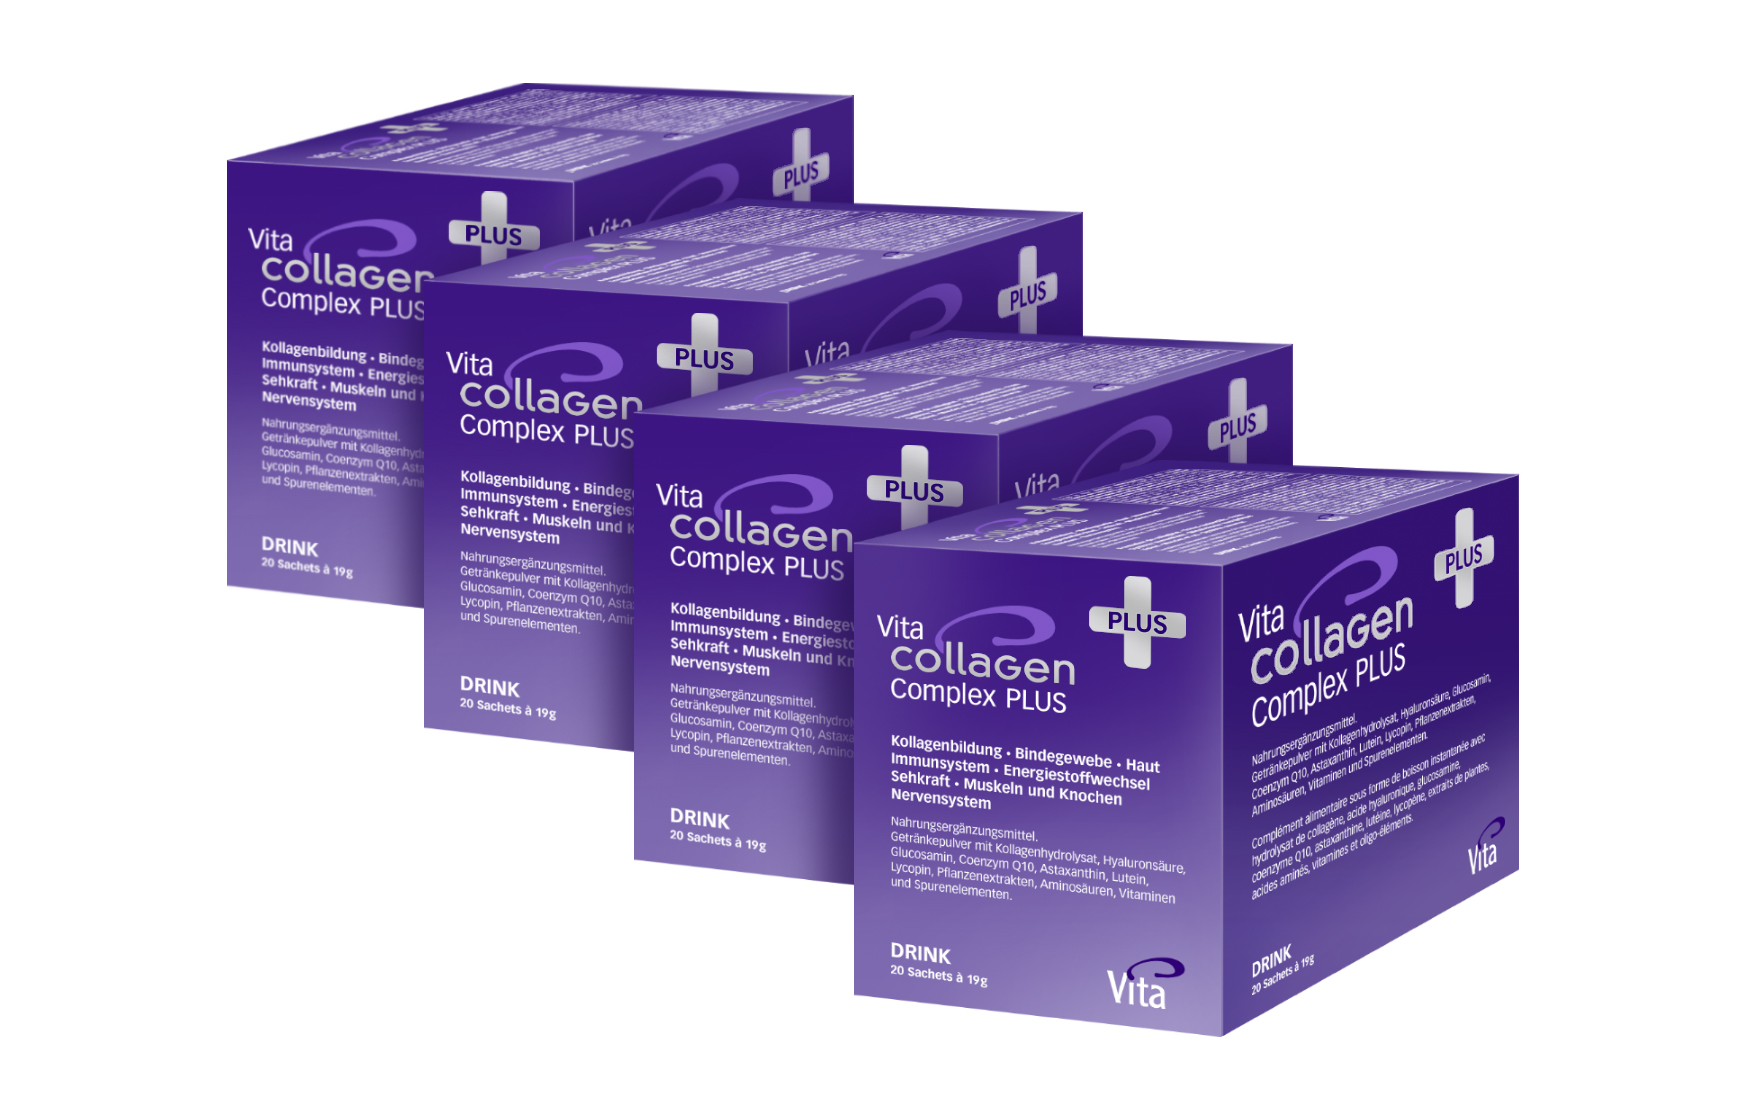 Vita Collagen Complex PLUS, Four pack